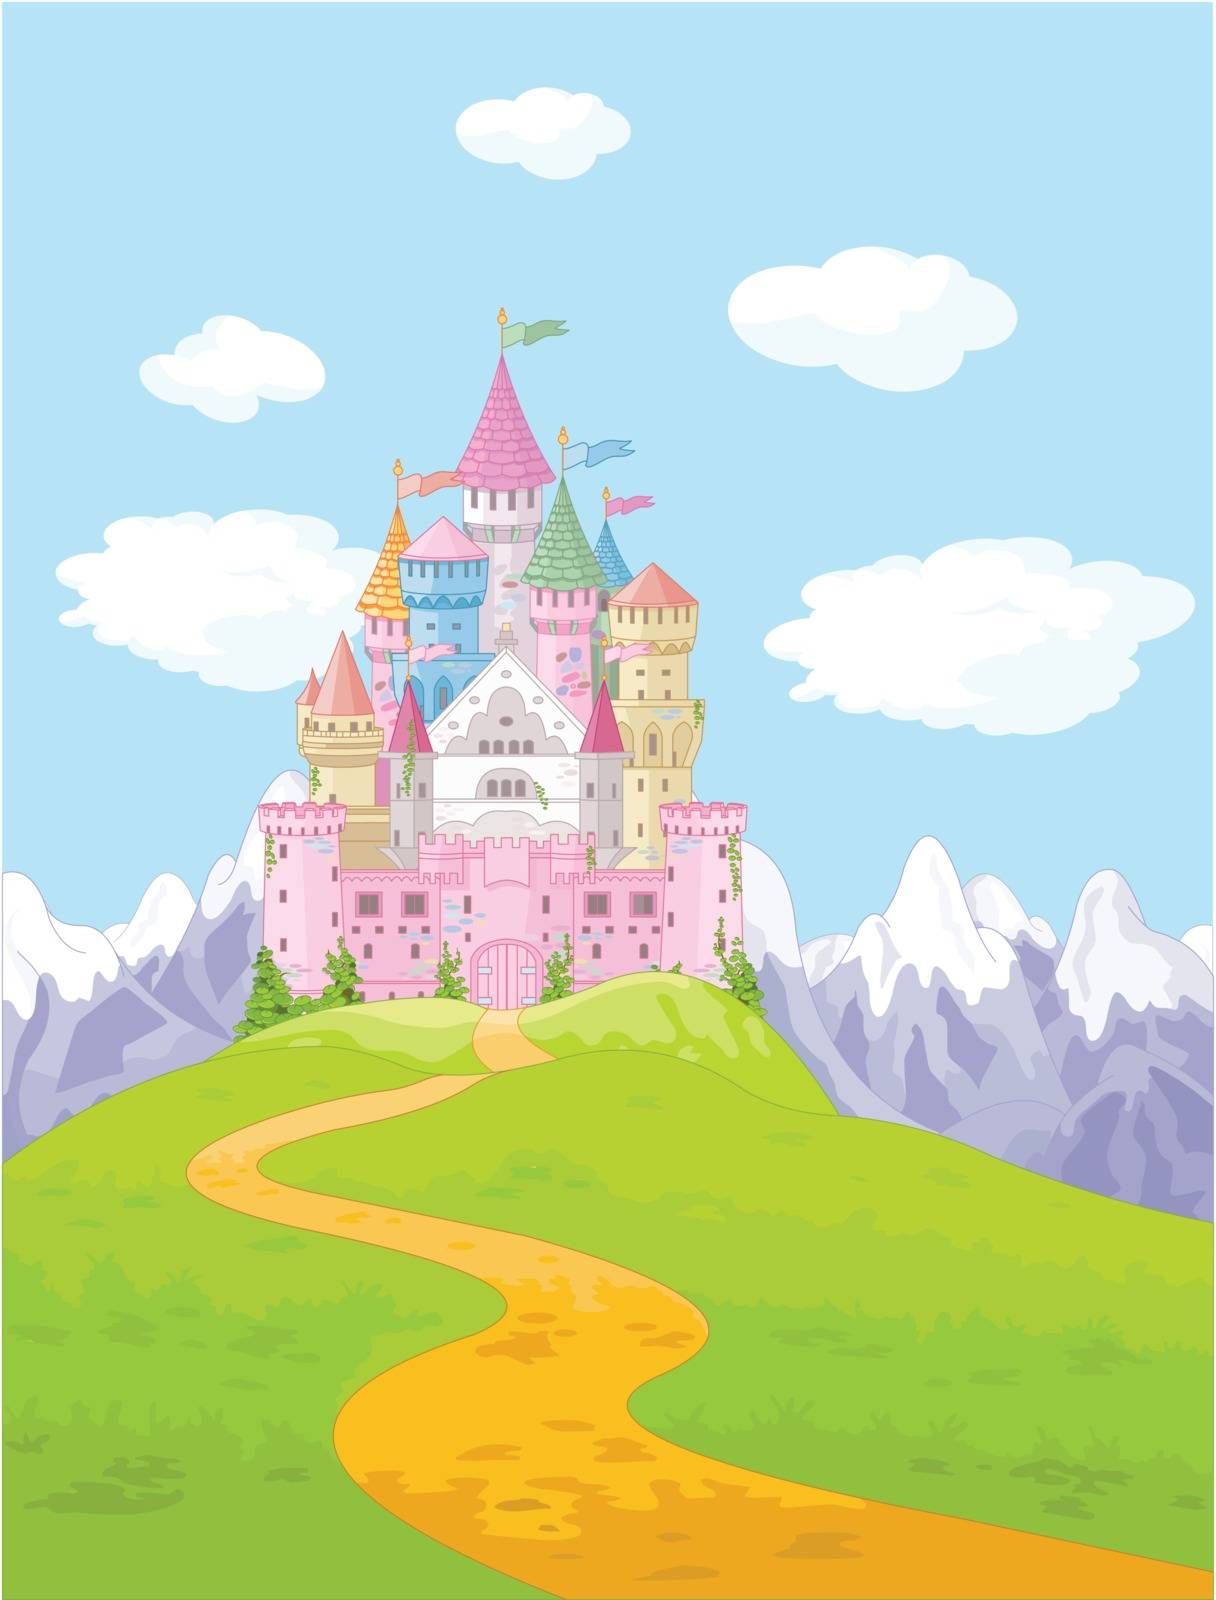 Fairy Tale Castle Landscape by Dazdraperma